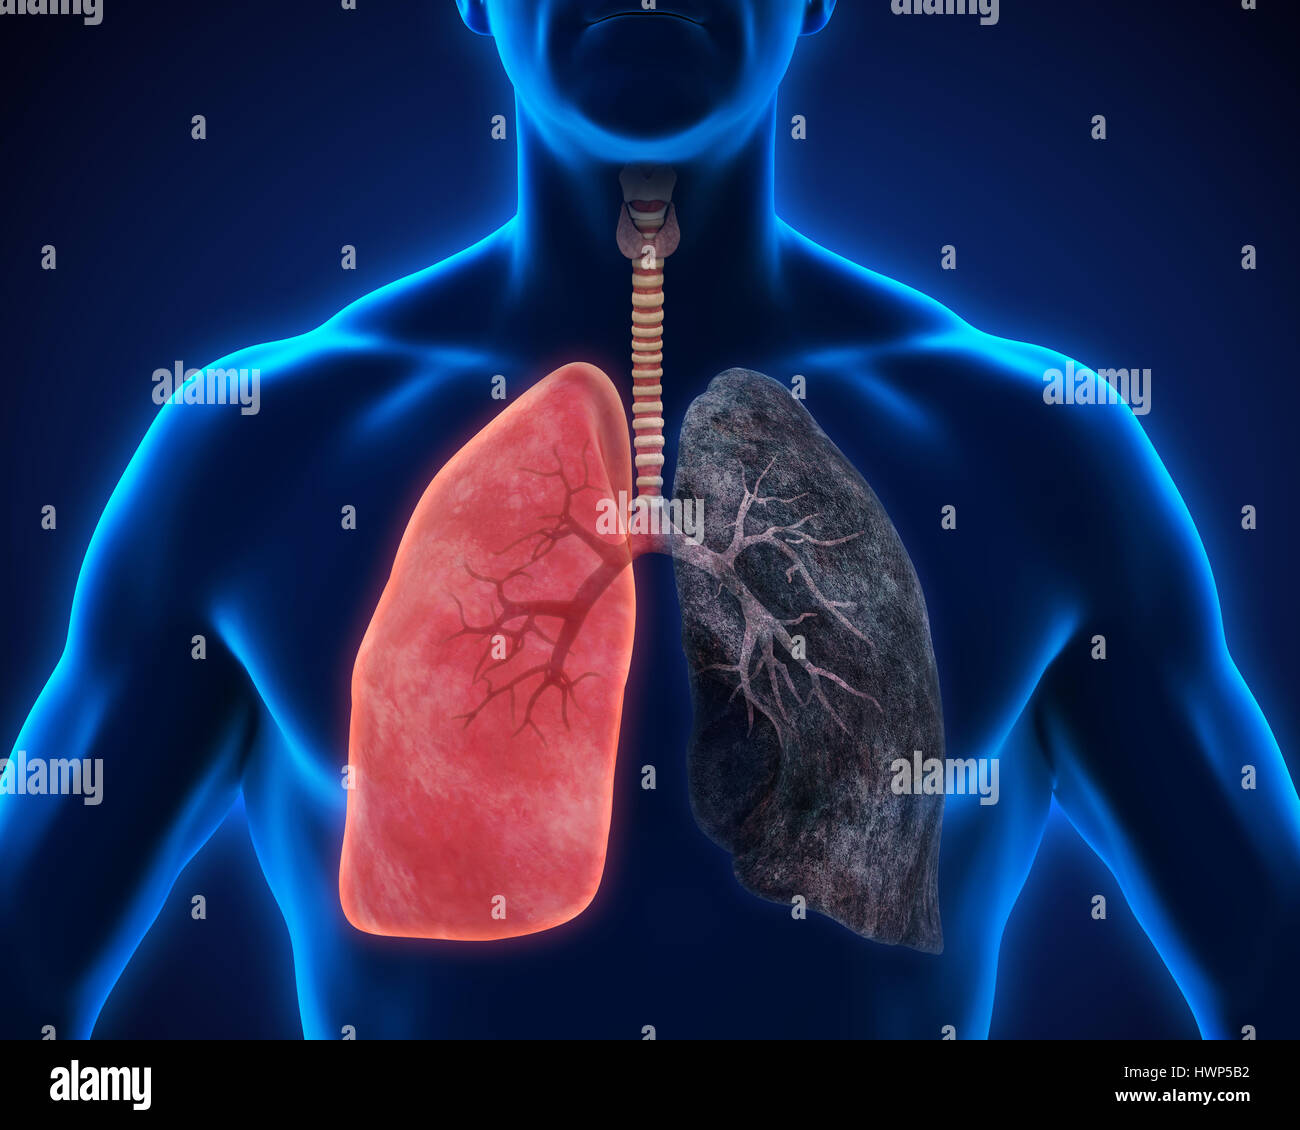 Gesunde Lunge und Raucher-Lunge Stockfotografie - Alamy